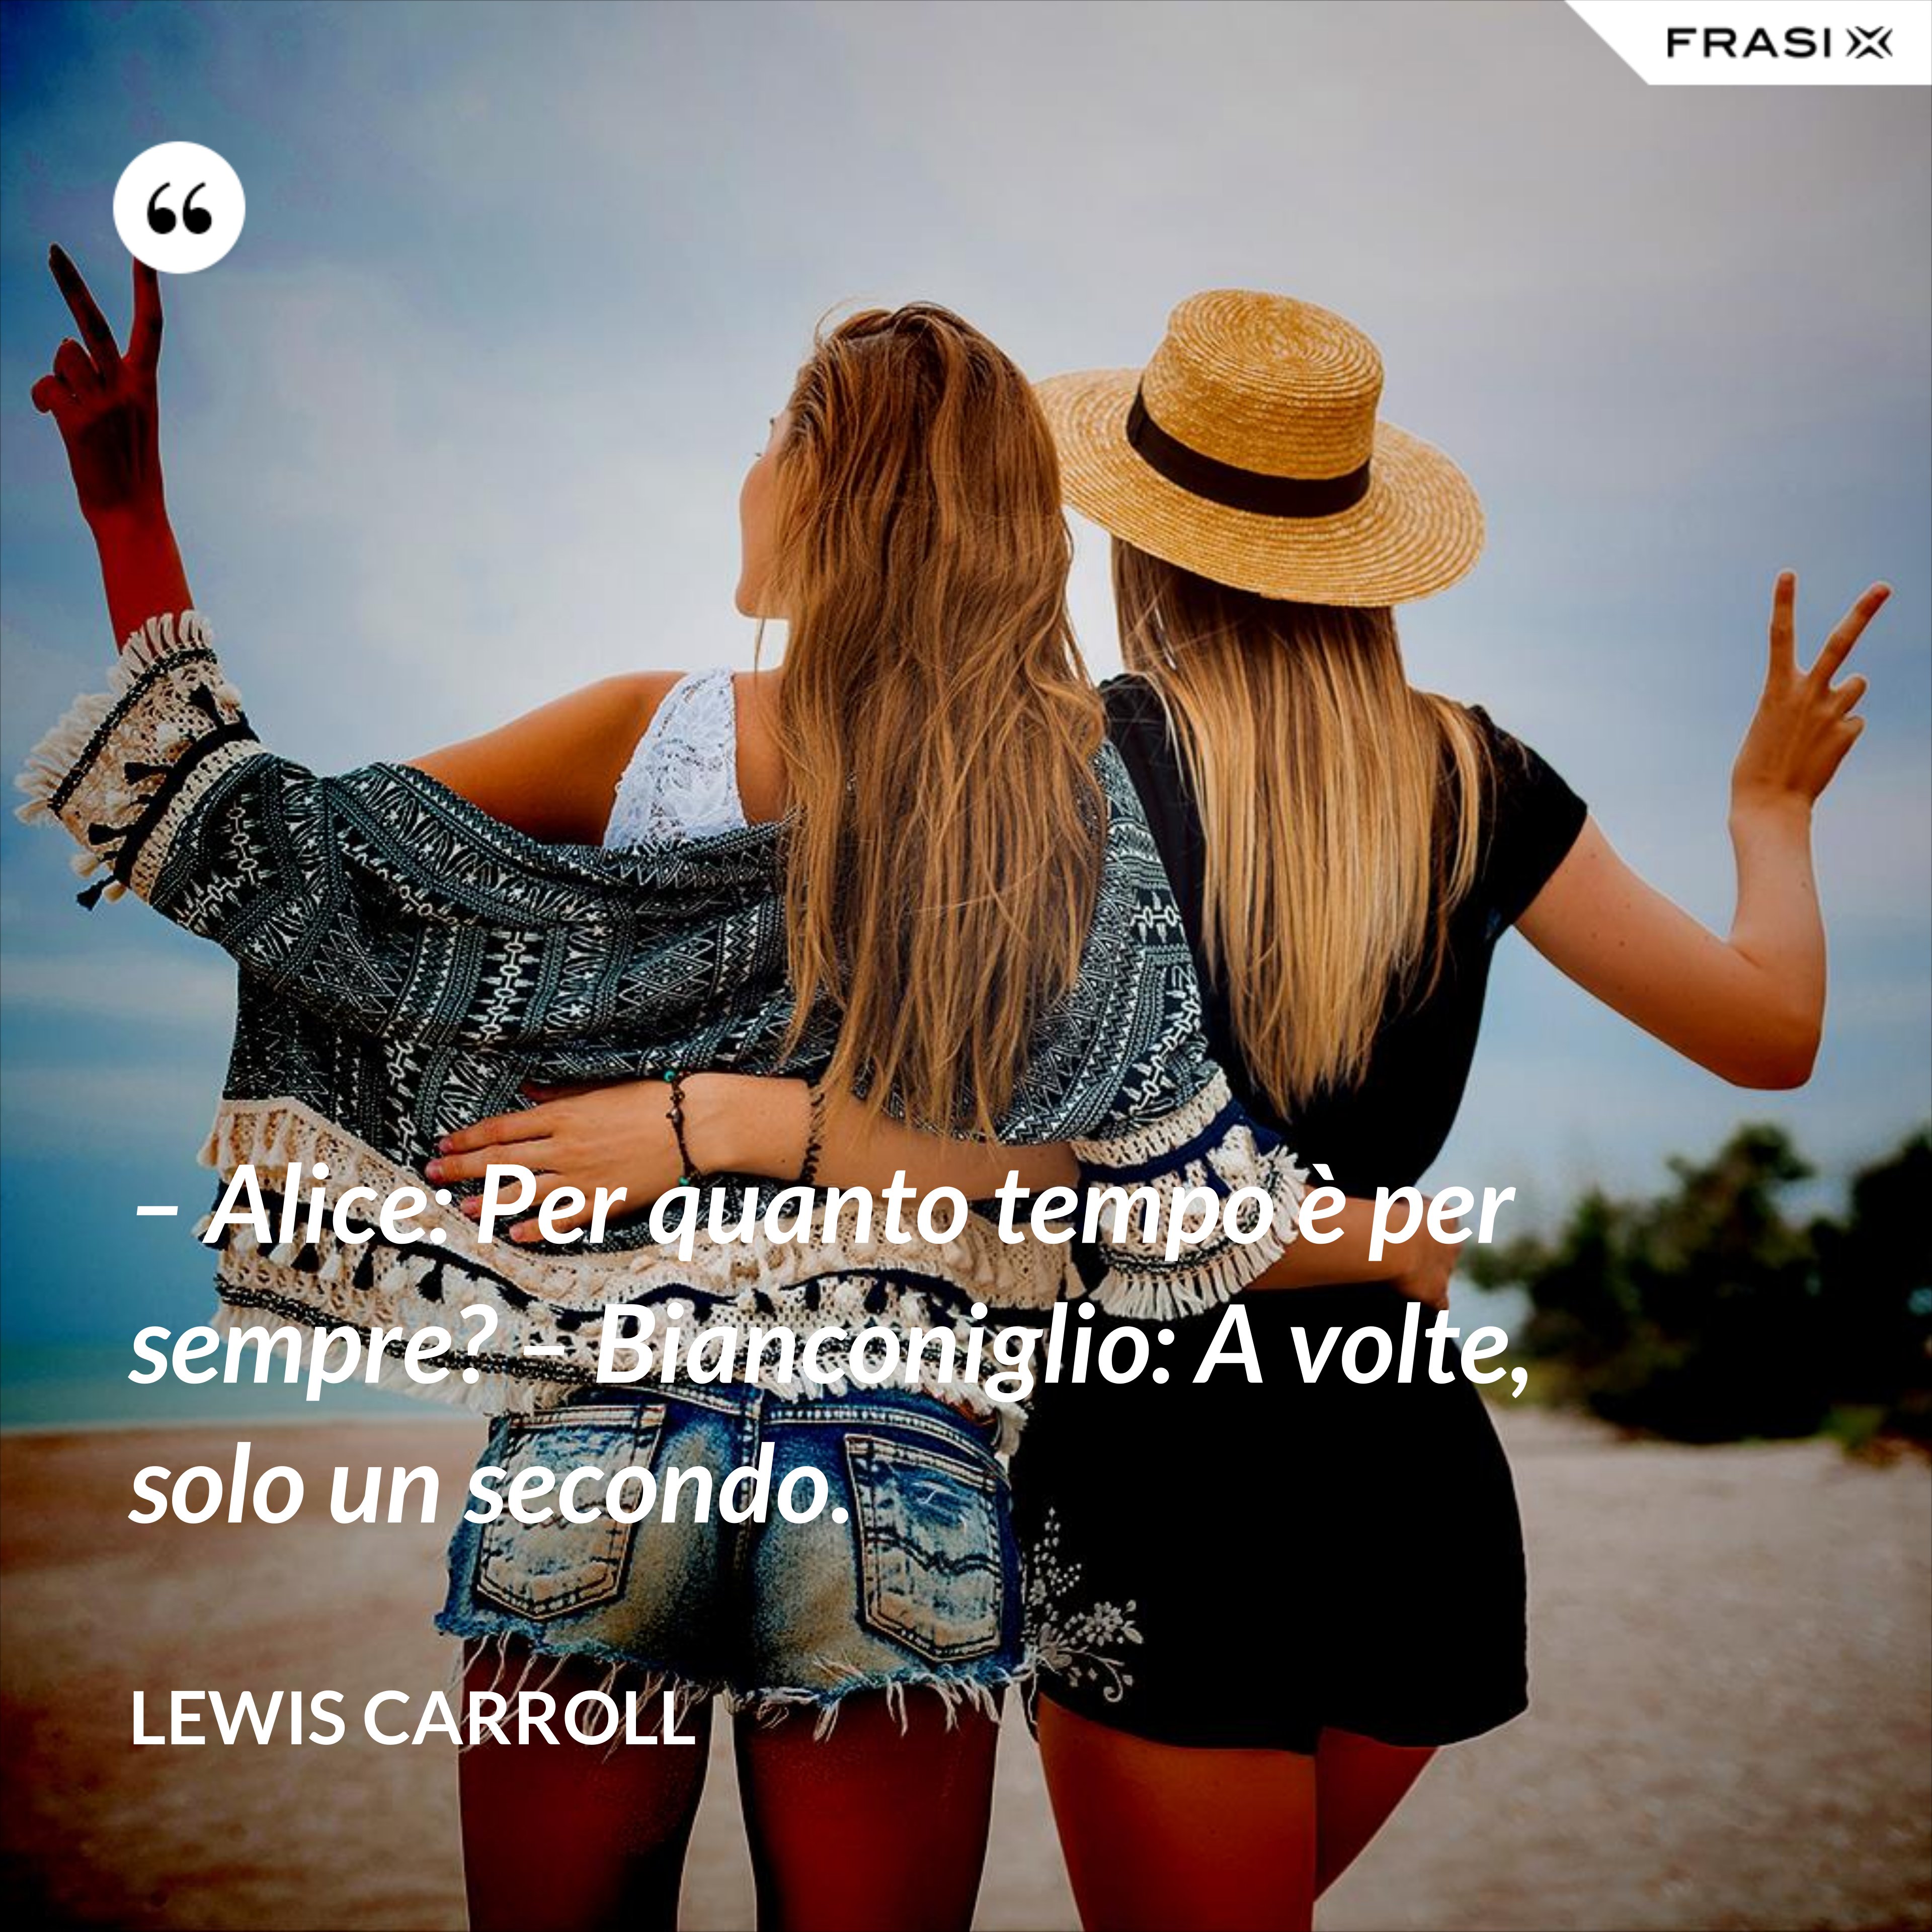 – Alice: Per quanto tempo è per sempre? – Bianconiglio: A volte, solo un secondo. - Lewis Carroll